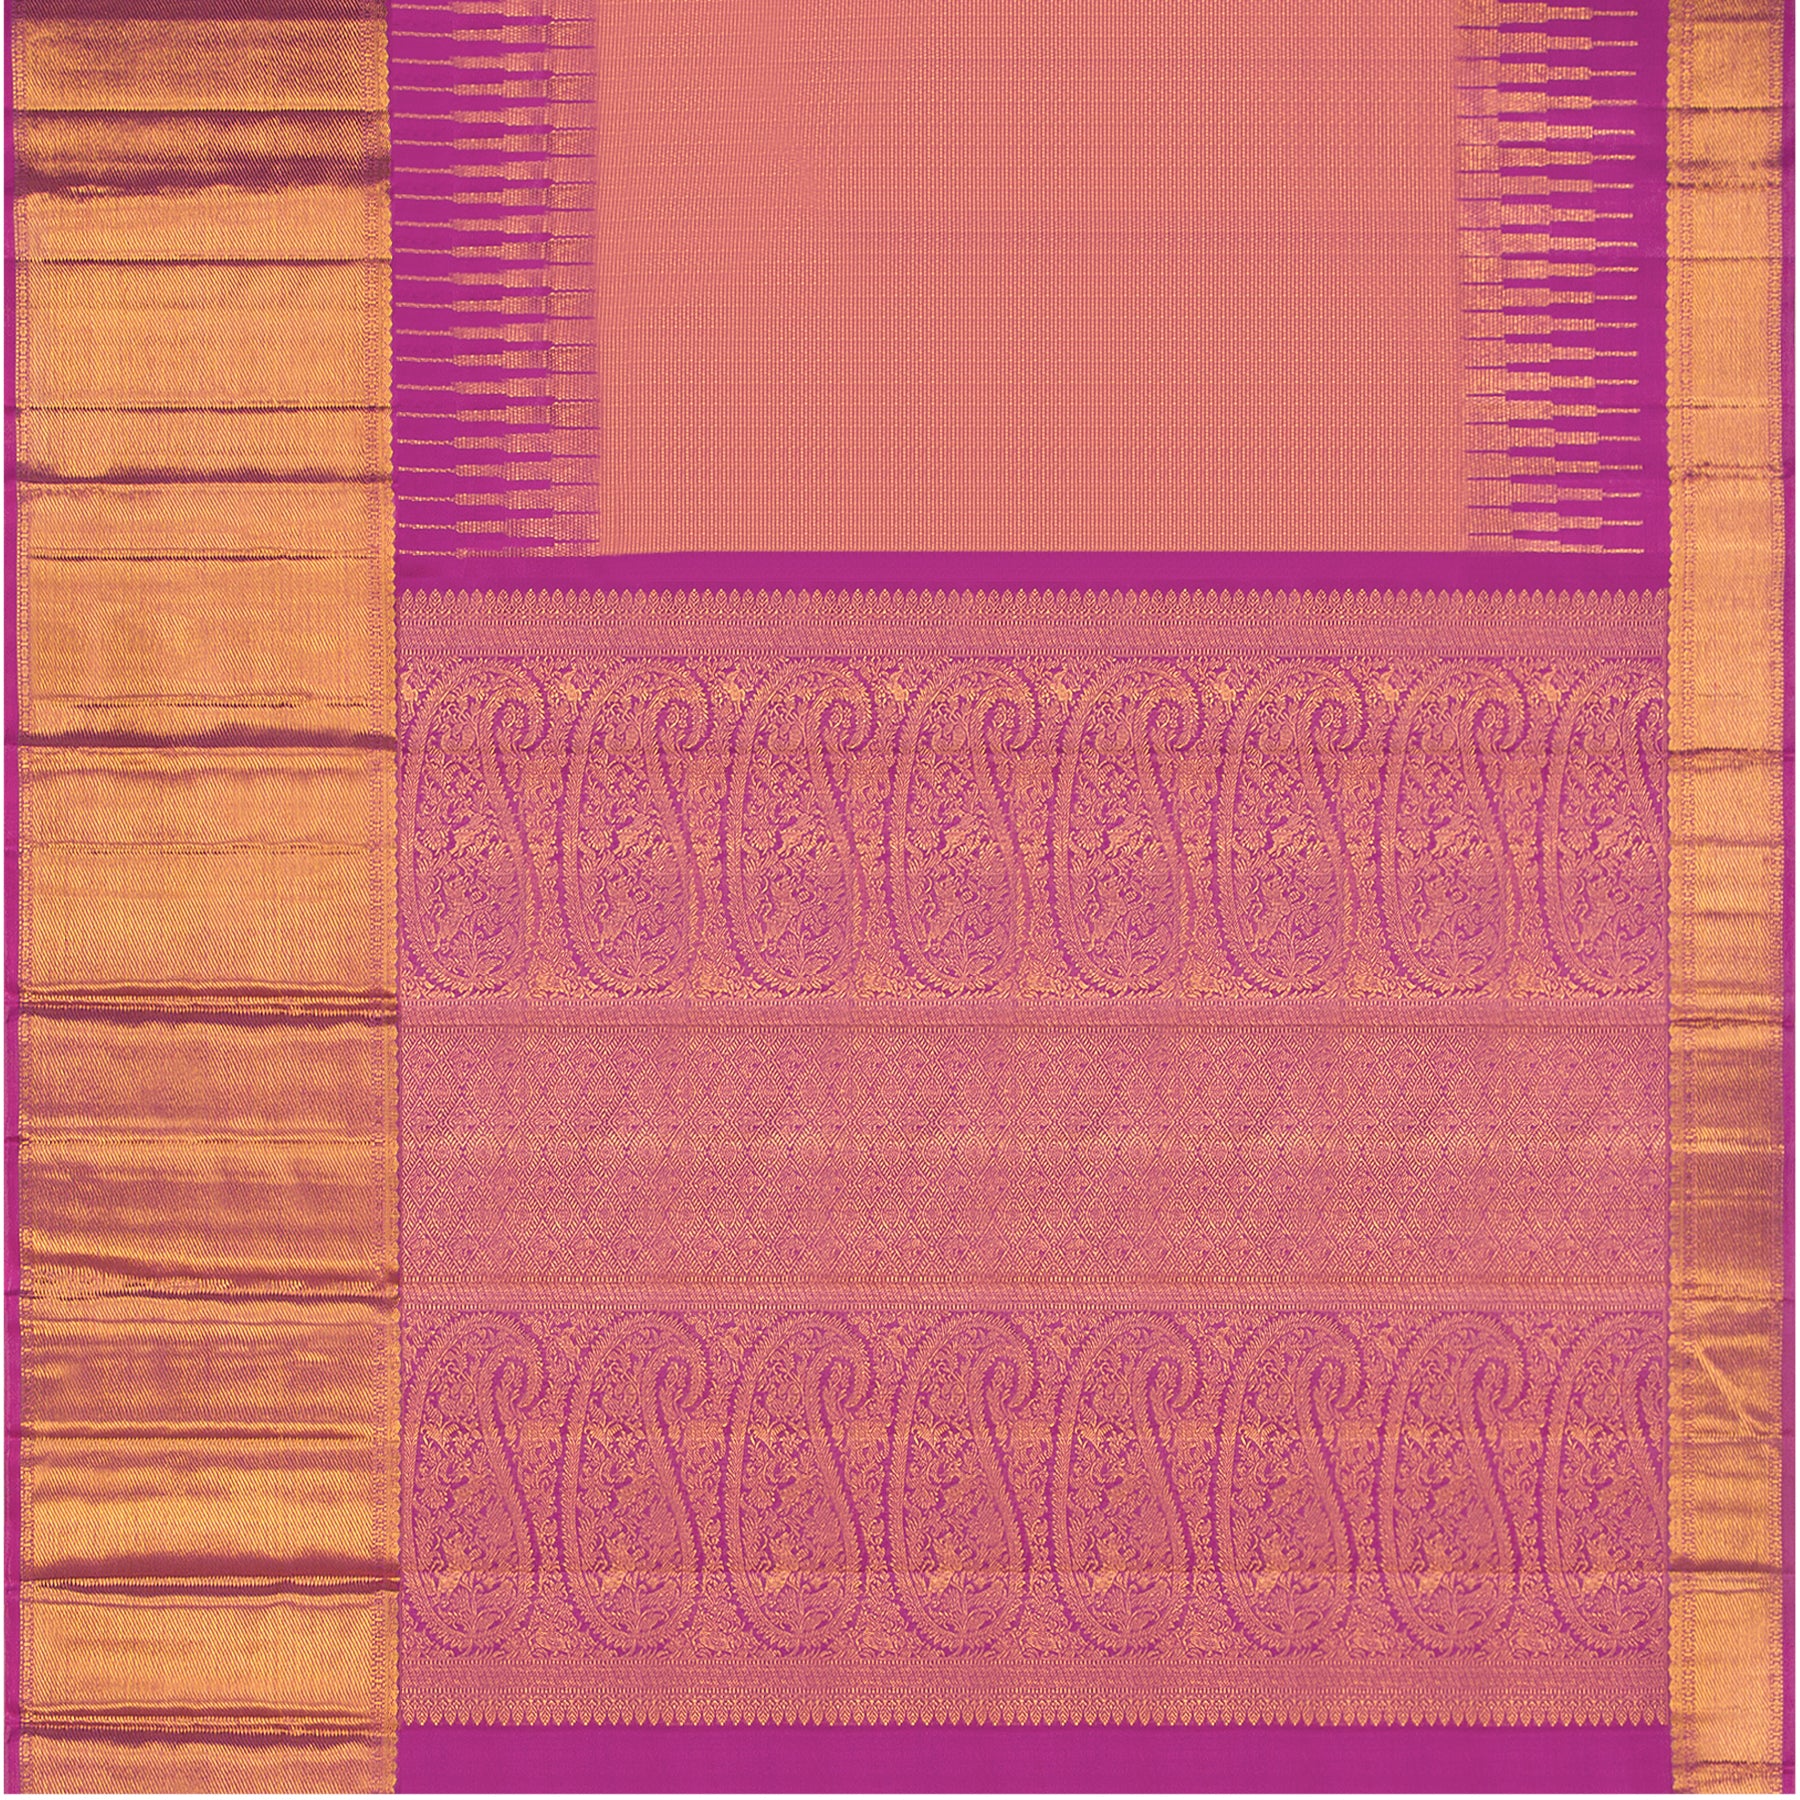 Kanakavalli Kanjivaram Silk Sari 23-595-HS001-12817 - Full View